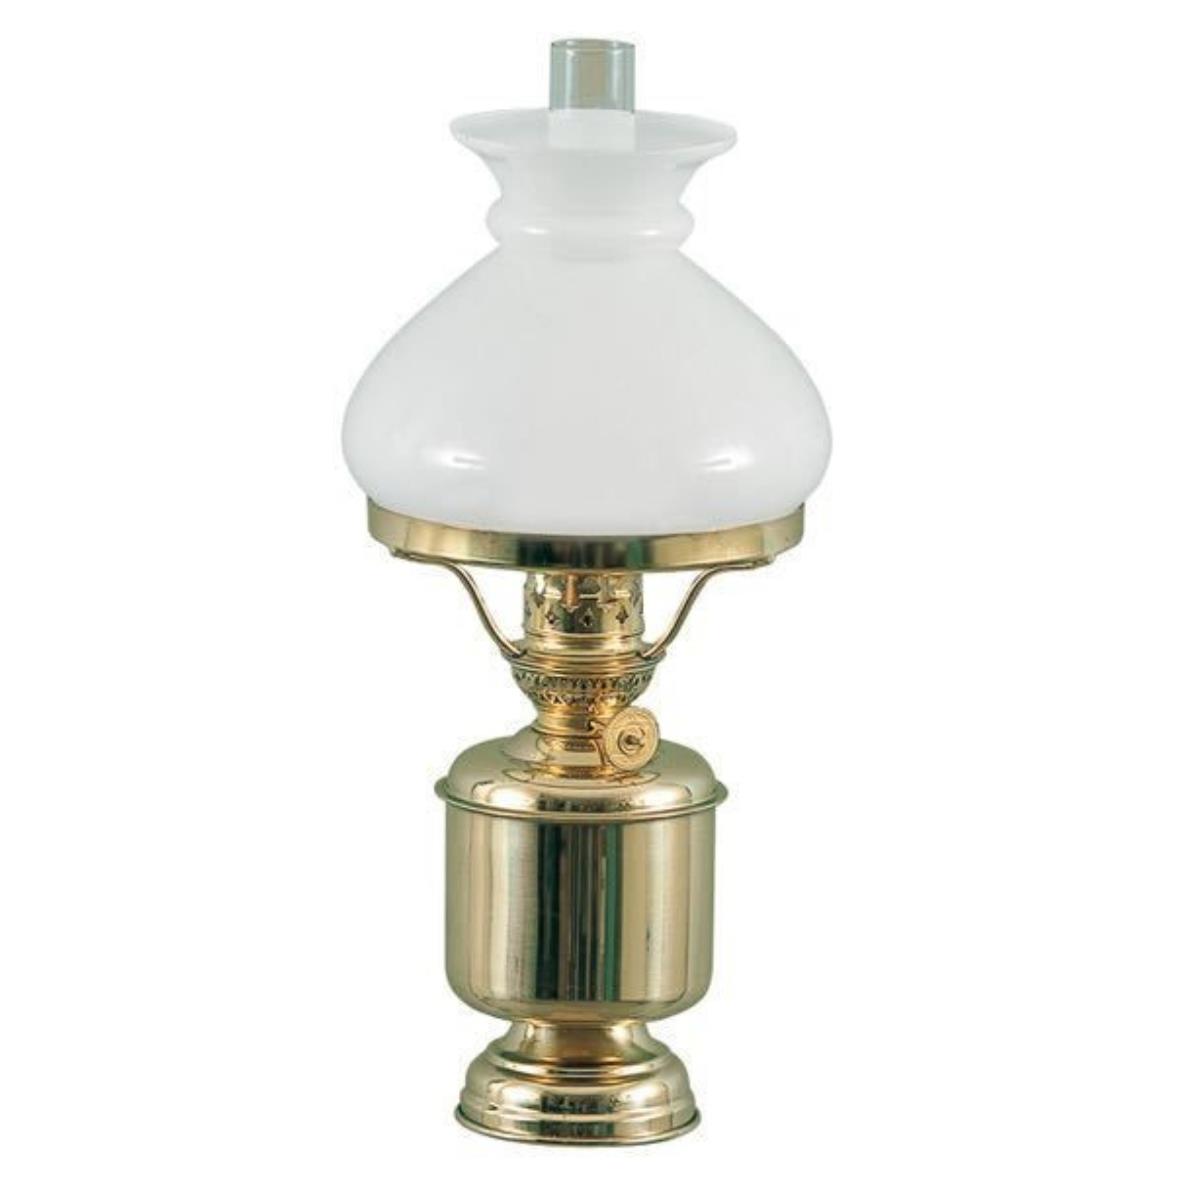 DHR Petroleumlampe mit Glasschirm, 320x130mm